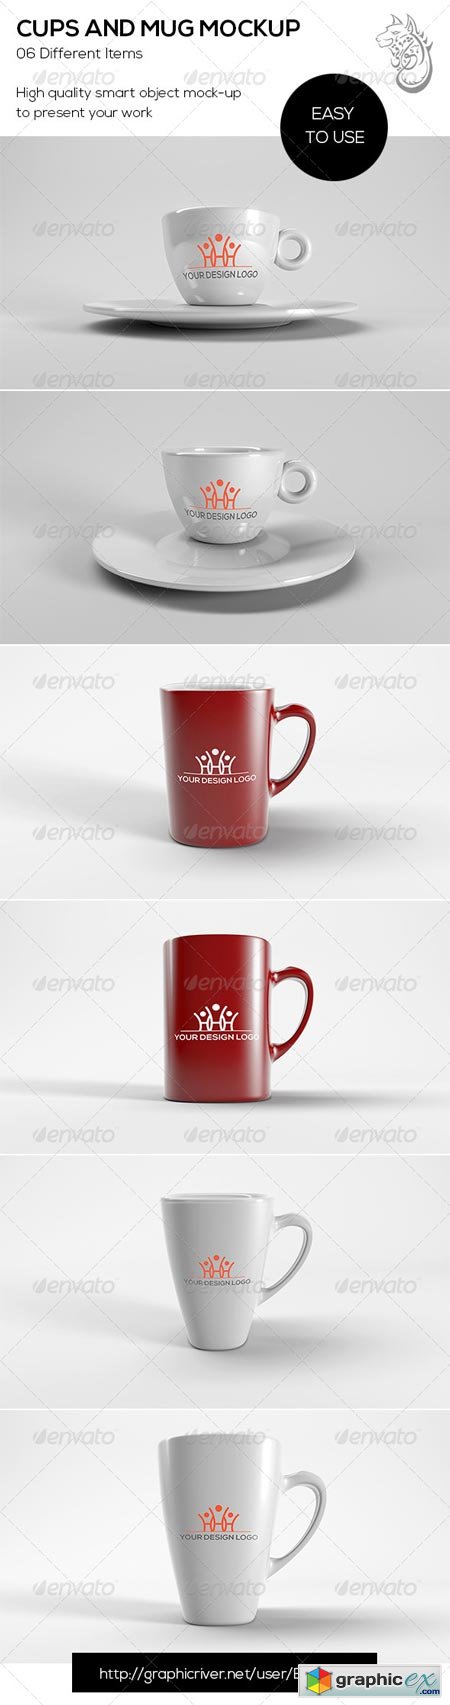 Cups And Mug Mockup 8683470